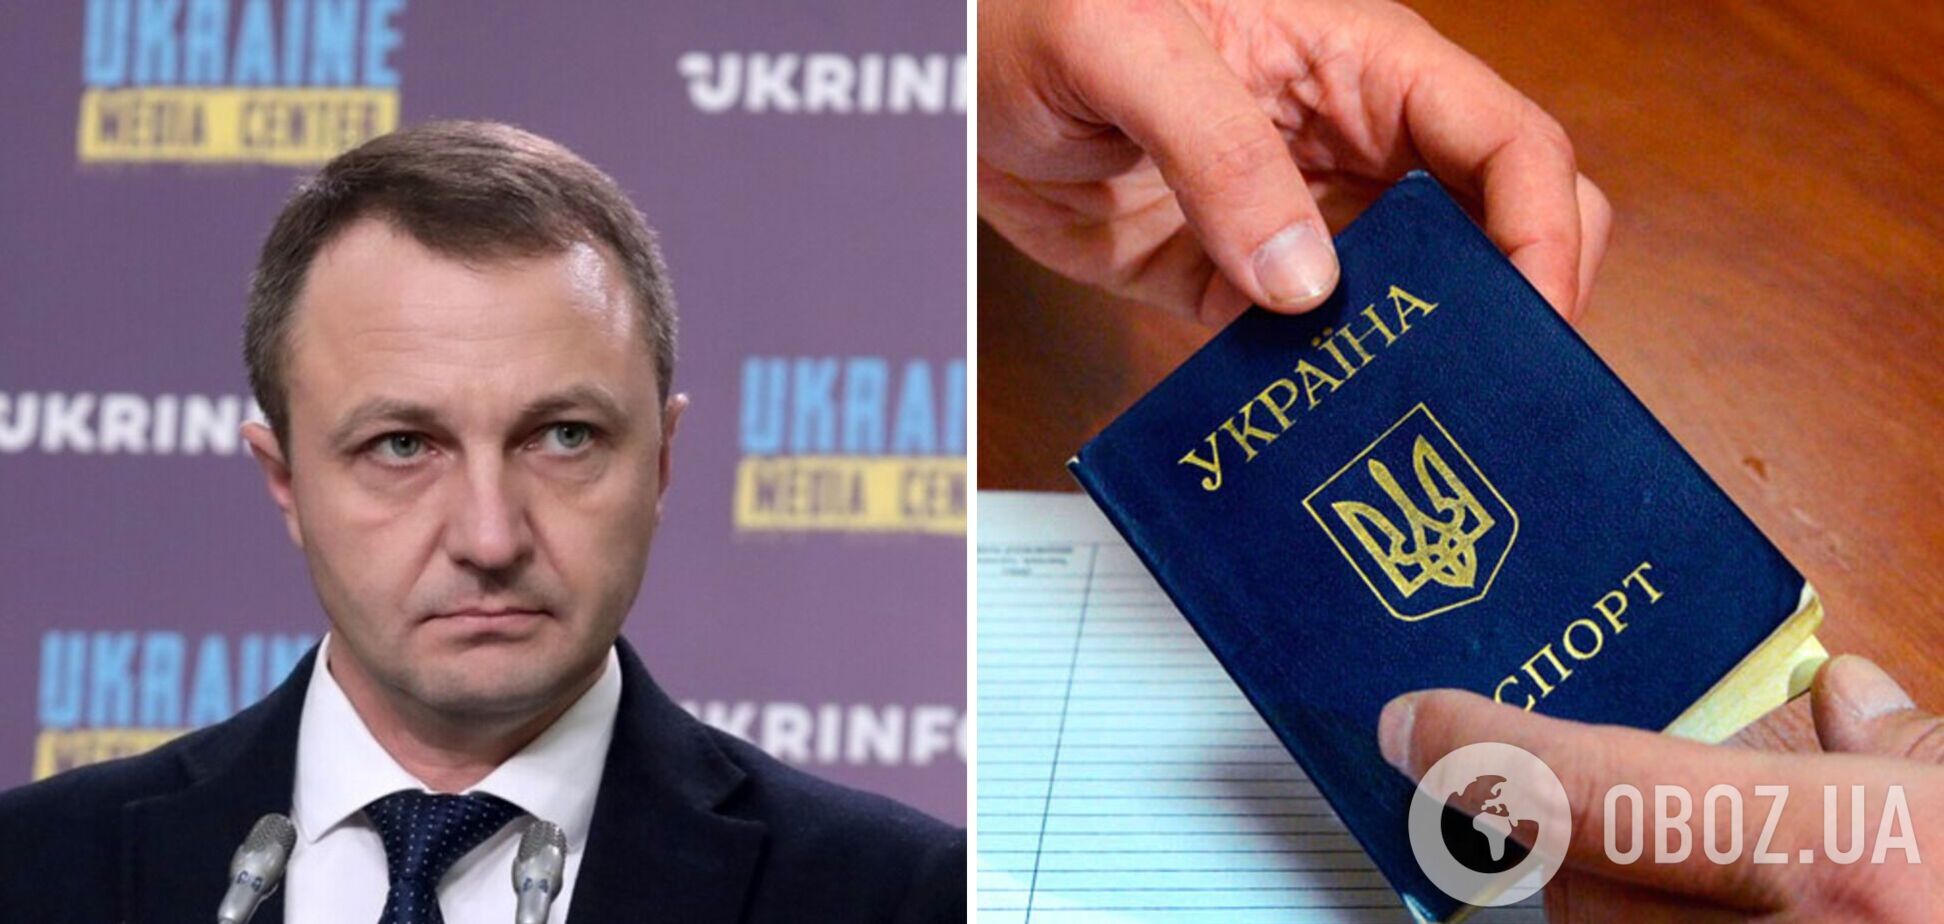 Из украинских паспортов хотят убрать русский язык: заявление омбудсмена